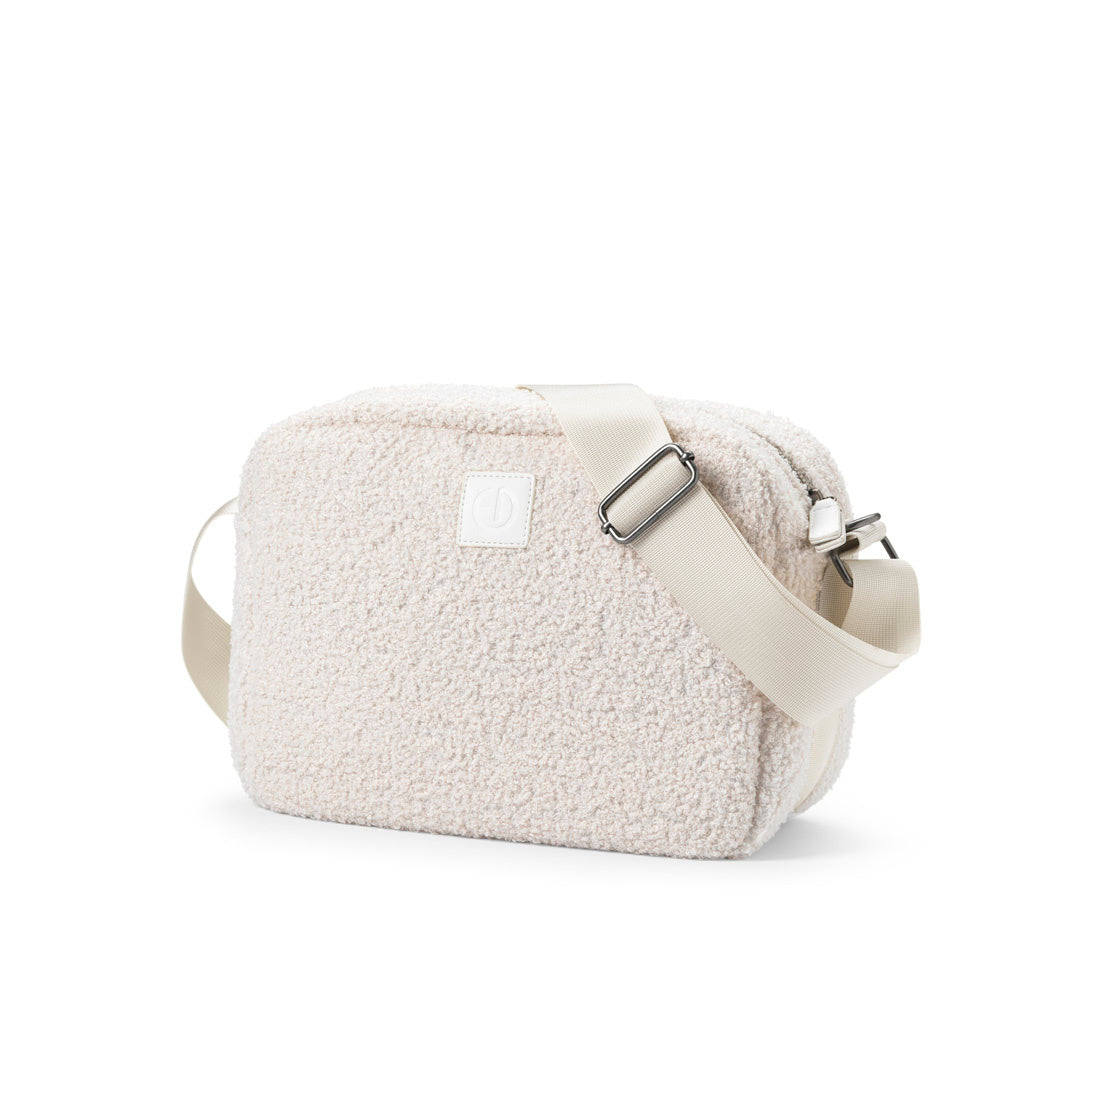 Elodie Details - a bag for mom - White Bouclé